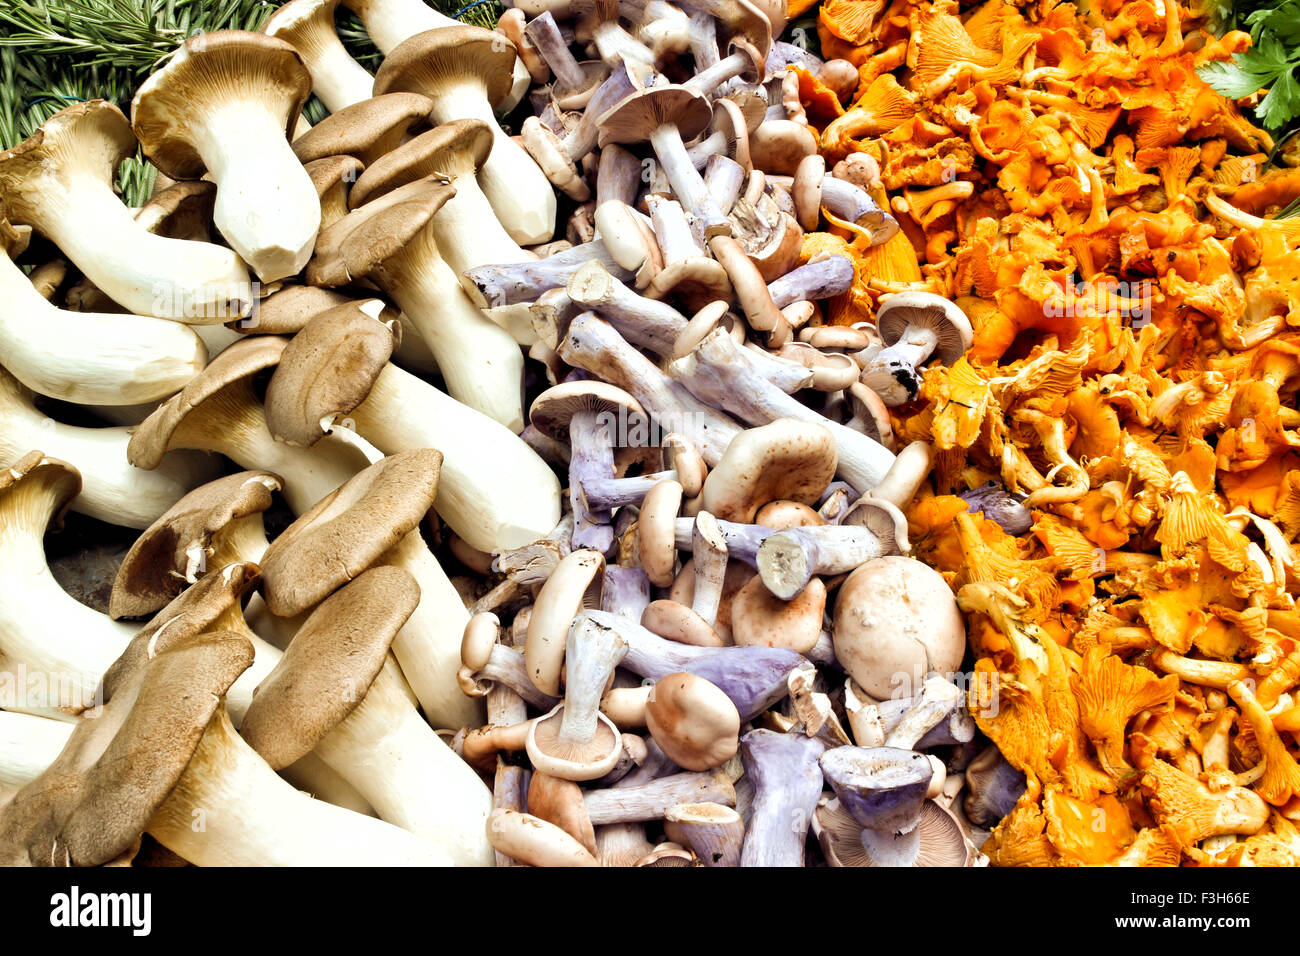 Close up de la récolte de chanterelles, pied bleu et king oyster champignons sauvages après l'alimentation d'aliments sauvages Banque D'Images